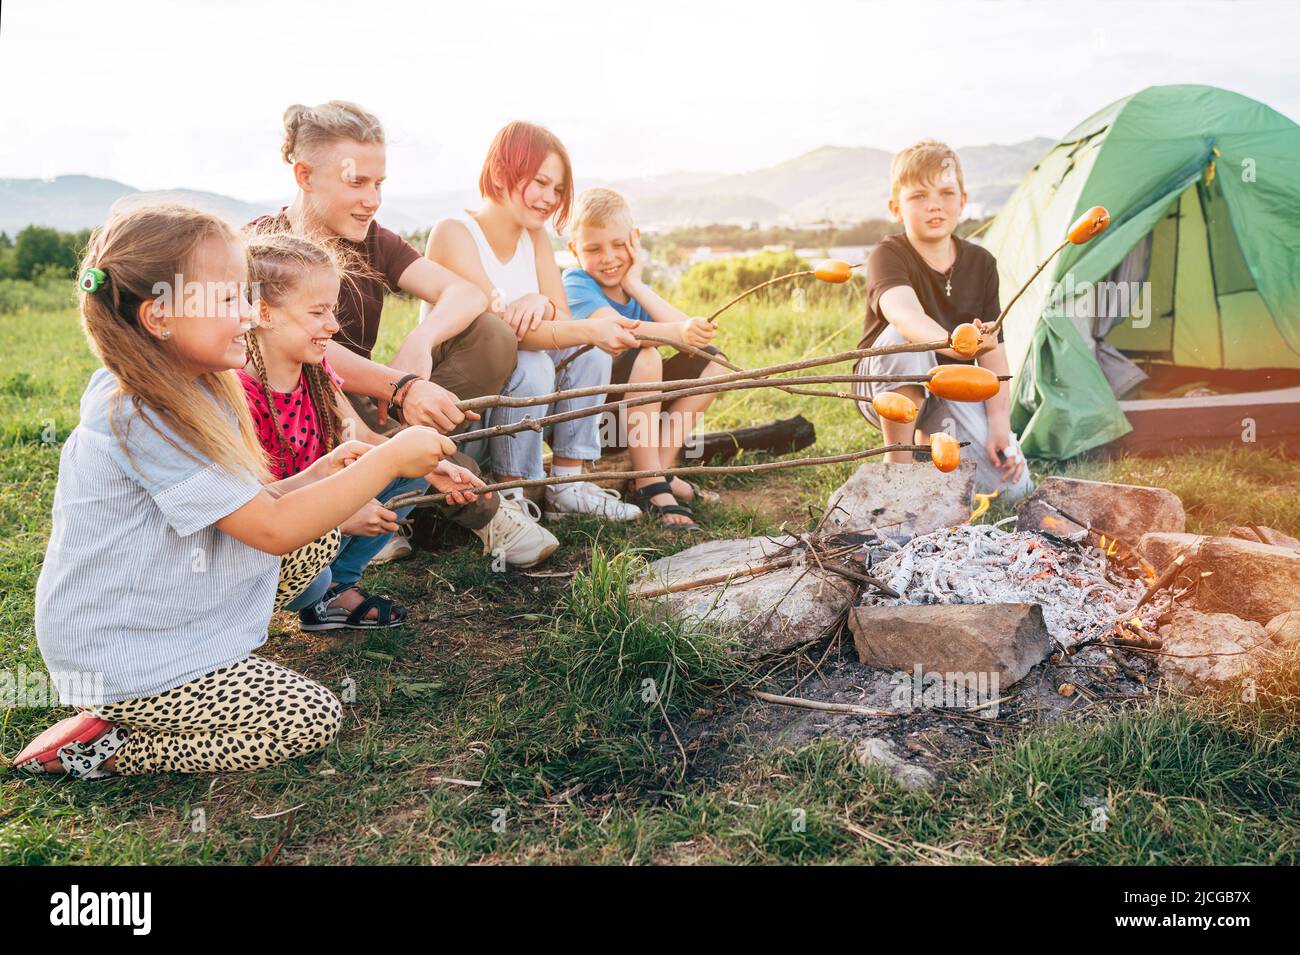 Sechs Kindergruppen Jungen und Mädchen lachten fröhlich und gerösteten Würstchen auf Stöcken über einer Lagerfeuerflamme in der Nähe des grünen Zeltes. Aktive Zeit im Freien Stockfoto